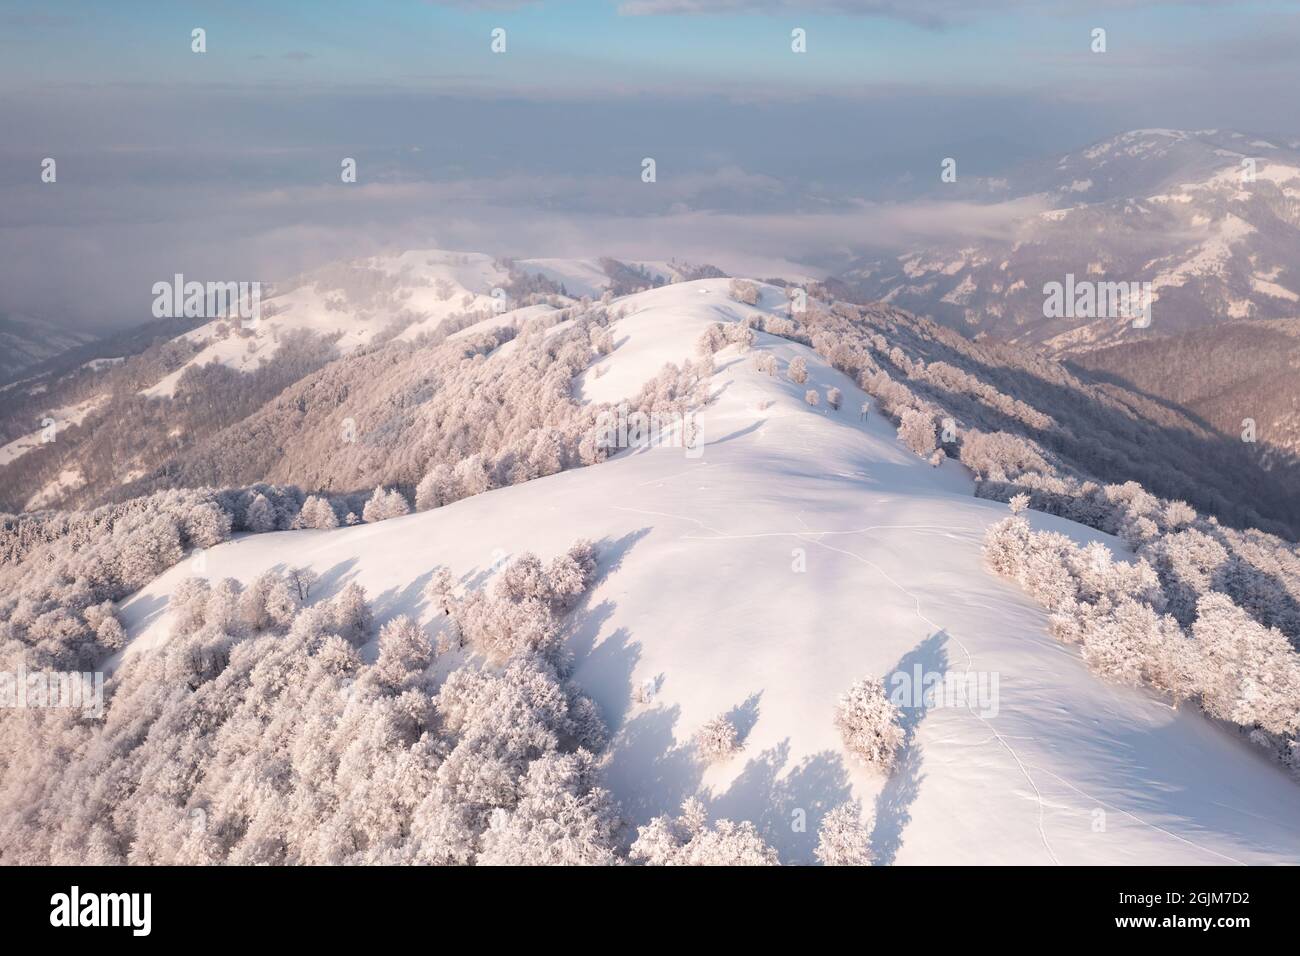 Vue aérienne incroyable sur la chaîne de montagnes, les prairies et les sommets enneigés en hiver. Forêt avec gel lumineux et lumière de lever de soleil chaude et lumineuse Banque D'Images